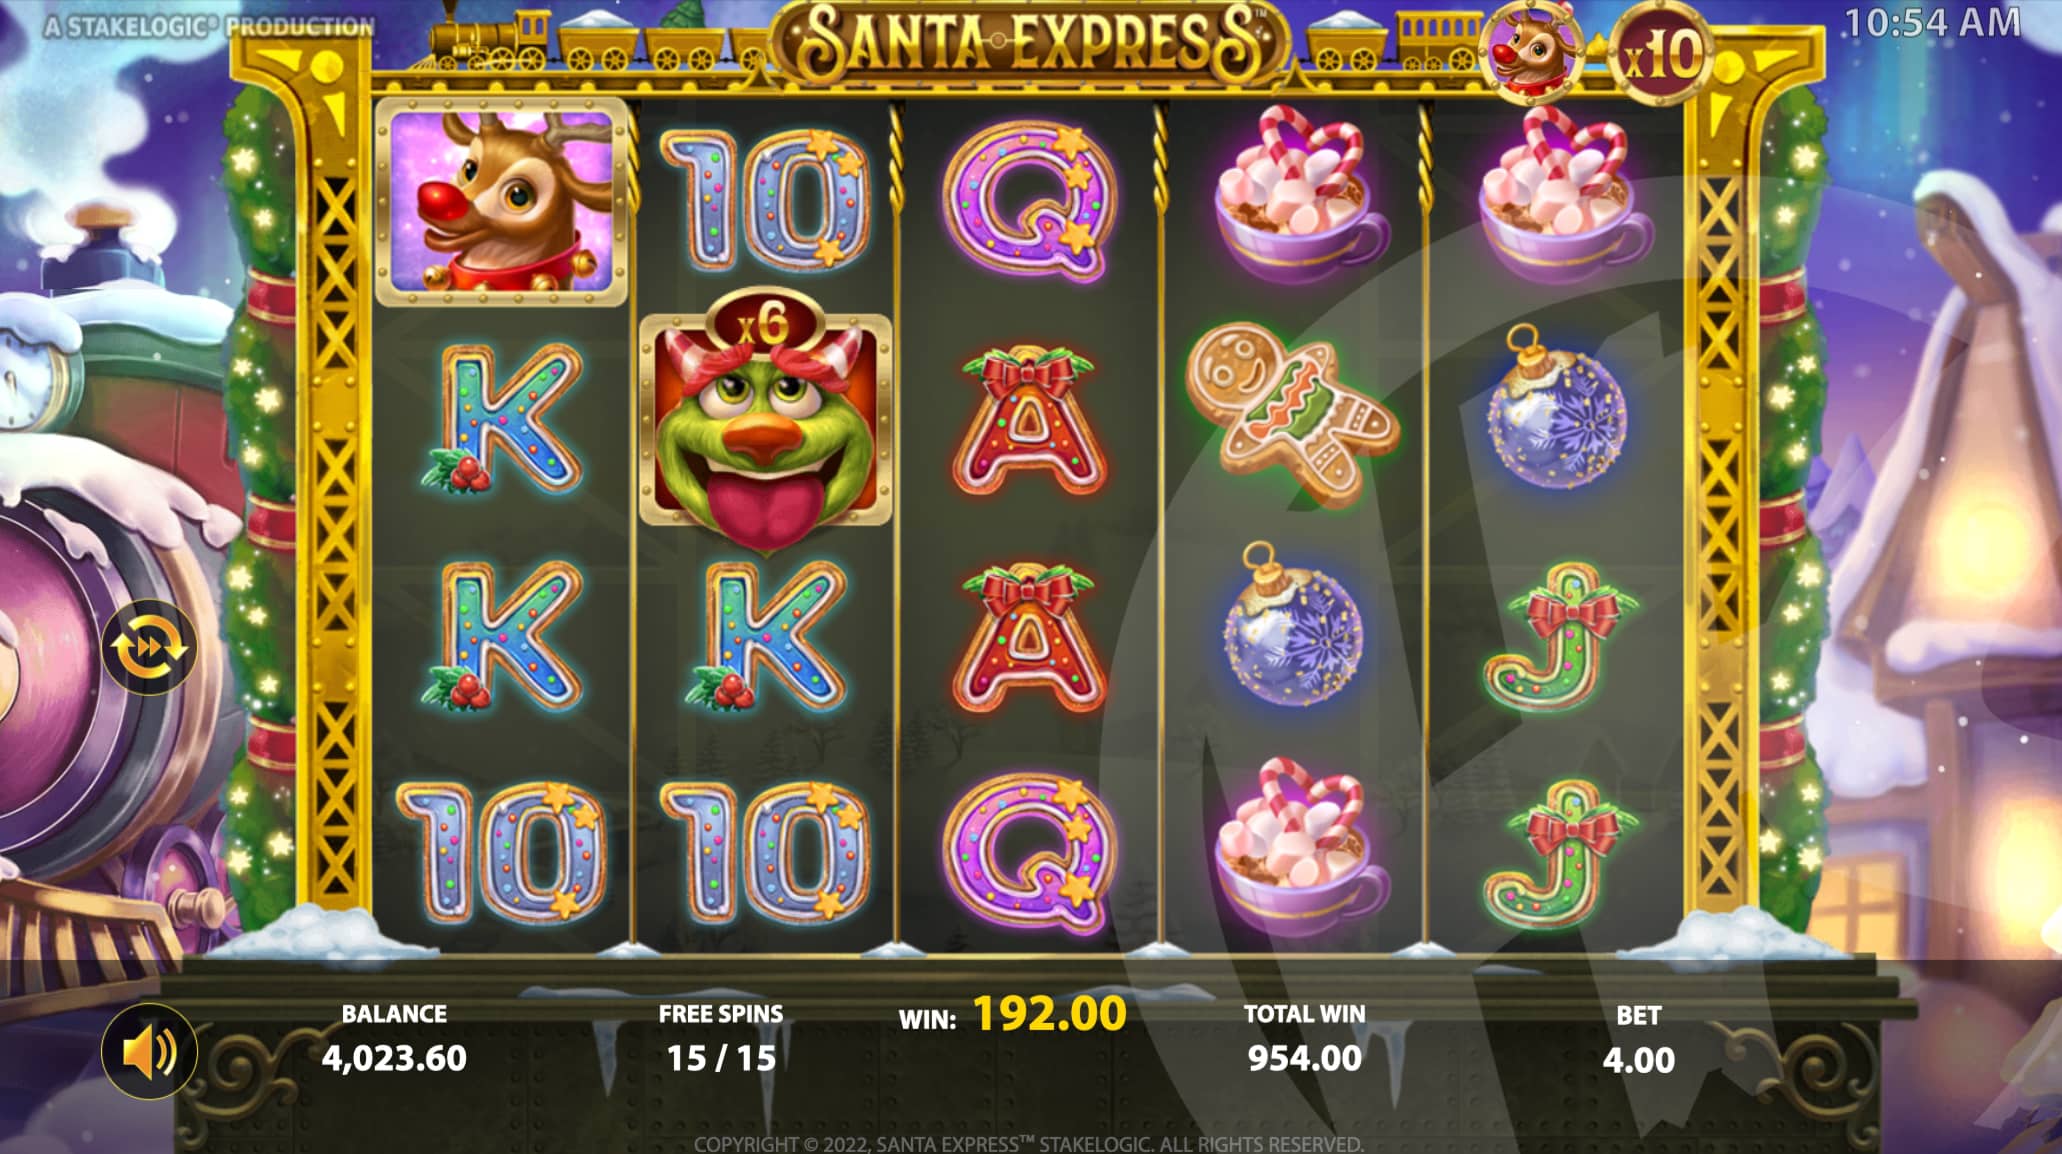 Santa Express Free Spins